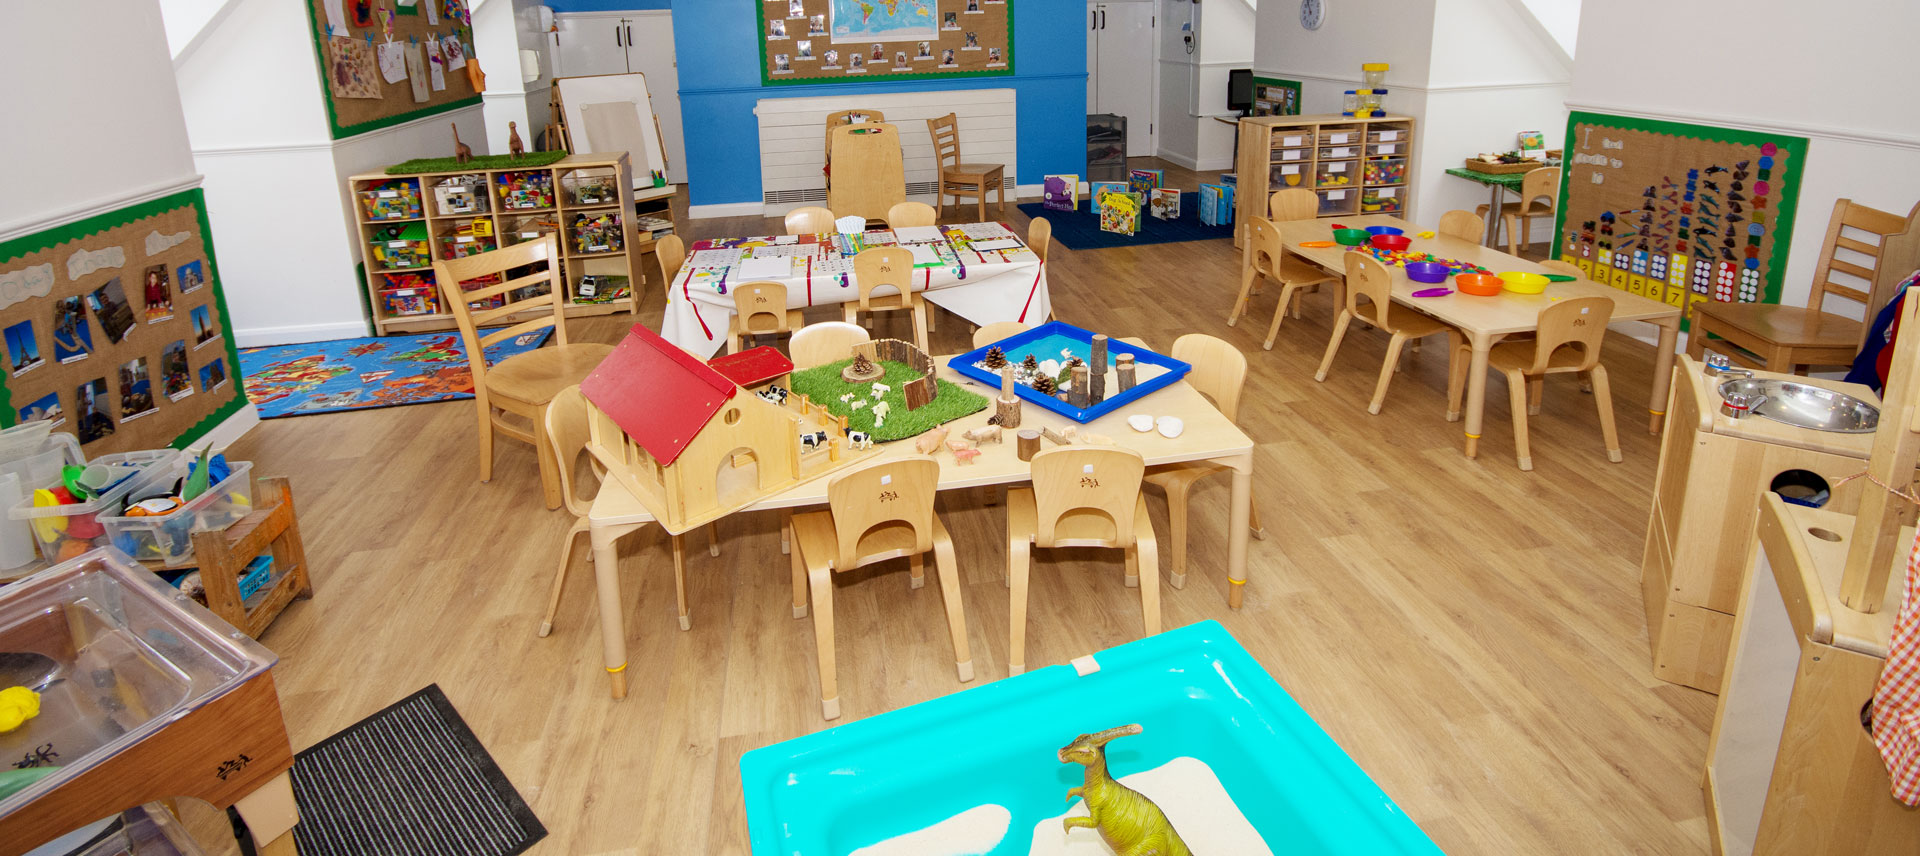 Wolfson Court Day Nursery and Preschool